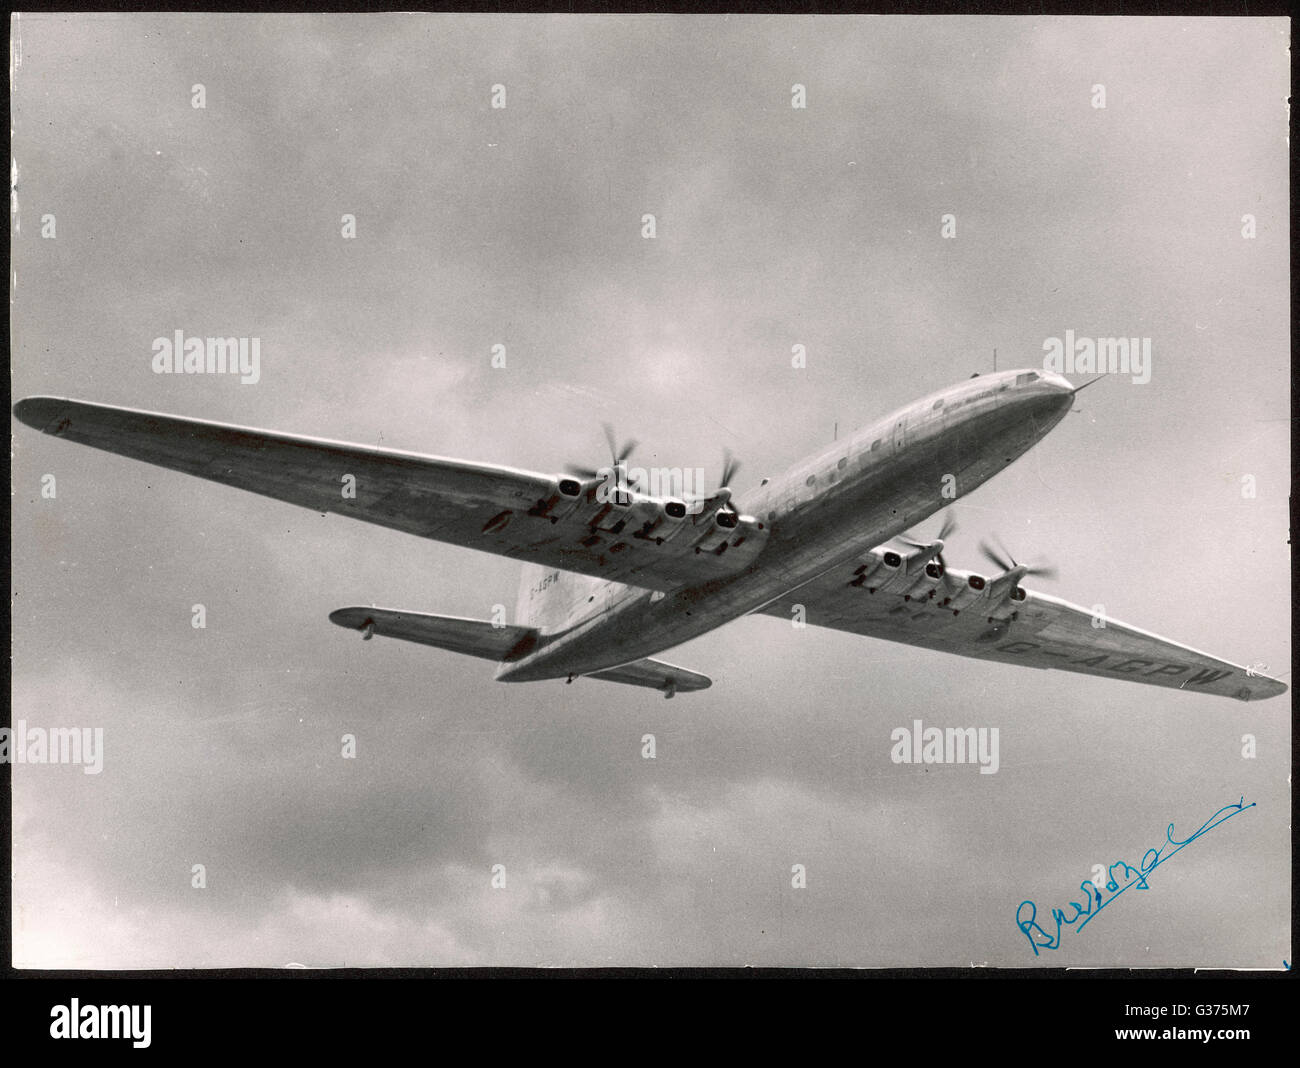 Entwickelt, um non-Stop-London-New York zu fliegen, ist das Bristol 167 die größte zivile Flugzeuge in der Luft - Spannweite 70m, Länge 54m.  Es scheitert nicht technisch aus wirtschaftlichen Gründen.     Datum: 1949 Stockfoto